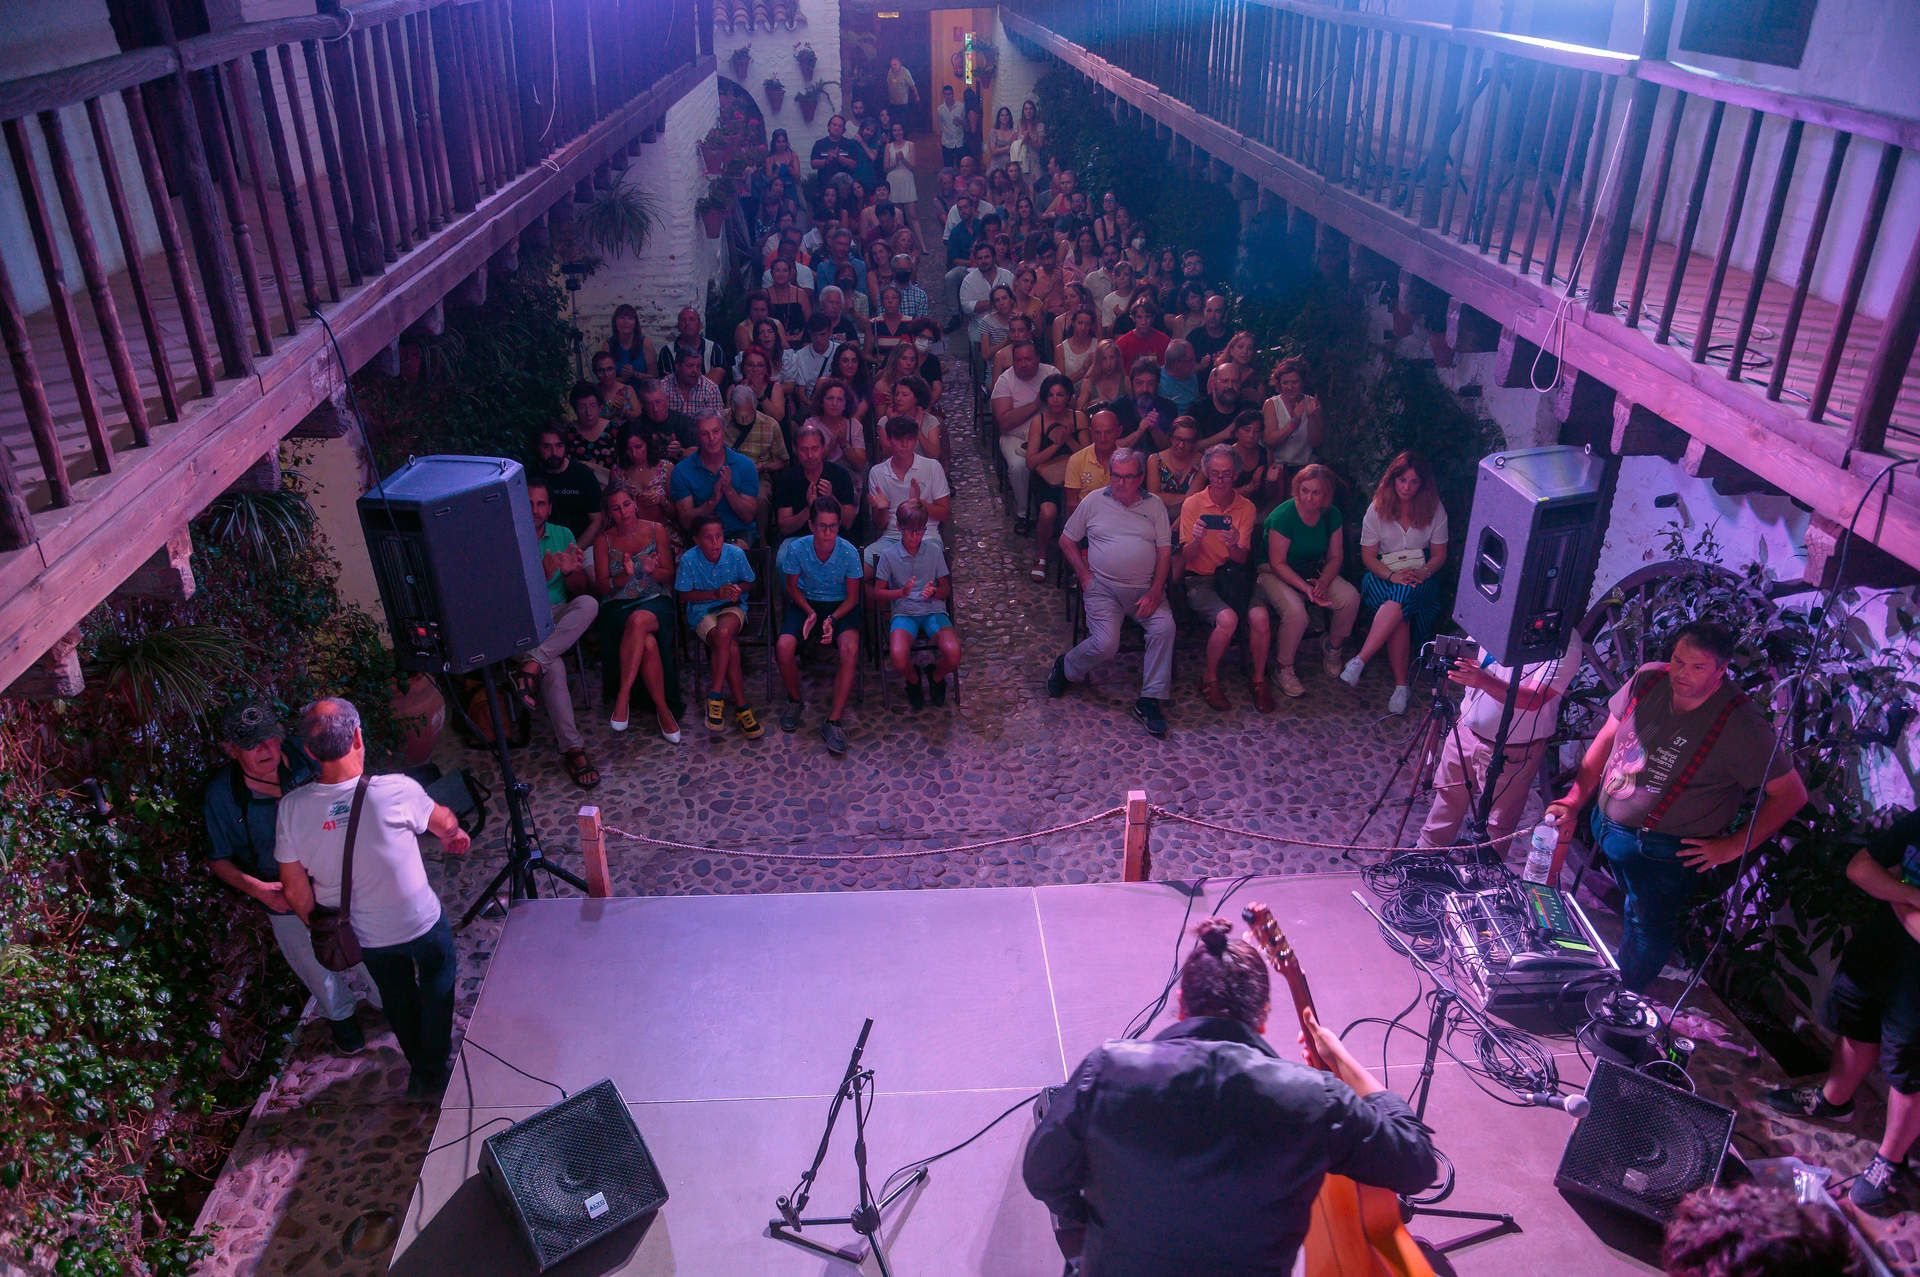 GALERÍA: Festival de la Guitarra de Córdoba: Coque Malla hace vibrar al Gran Teatro con un concierto memorable